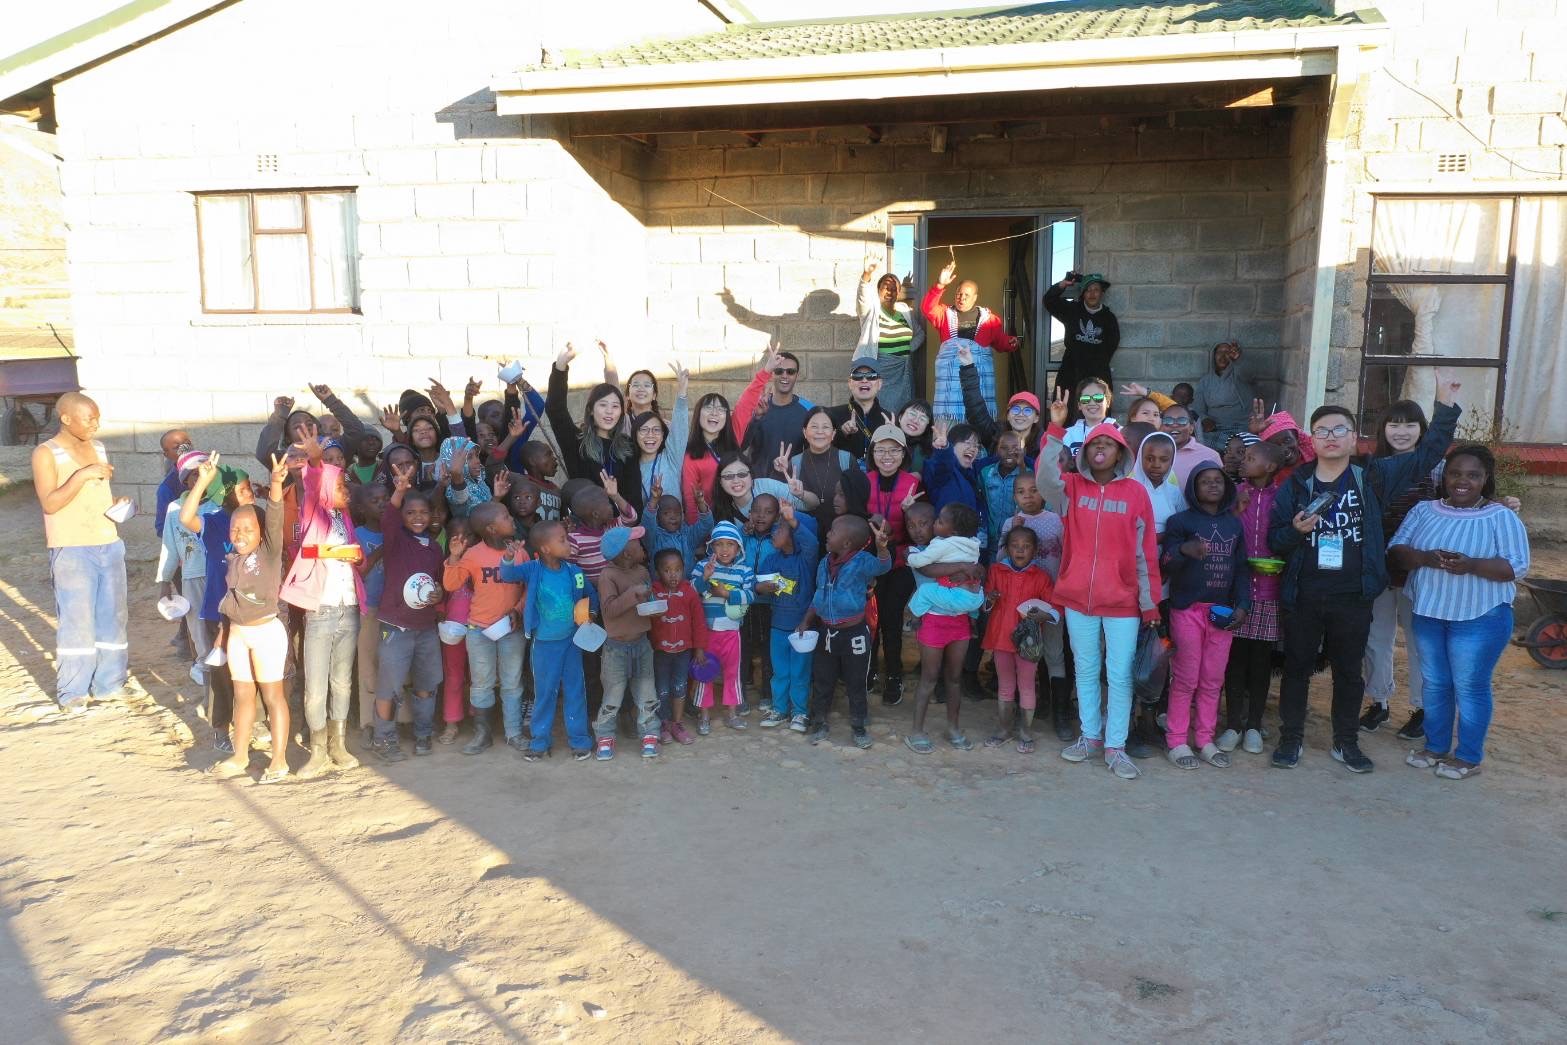  亞大創意領導學程的學生遠赴非洲賴索托阿彌陀佛關環中心(ACC)，執行OProSS（海外專業社會服務項目）計畫。